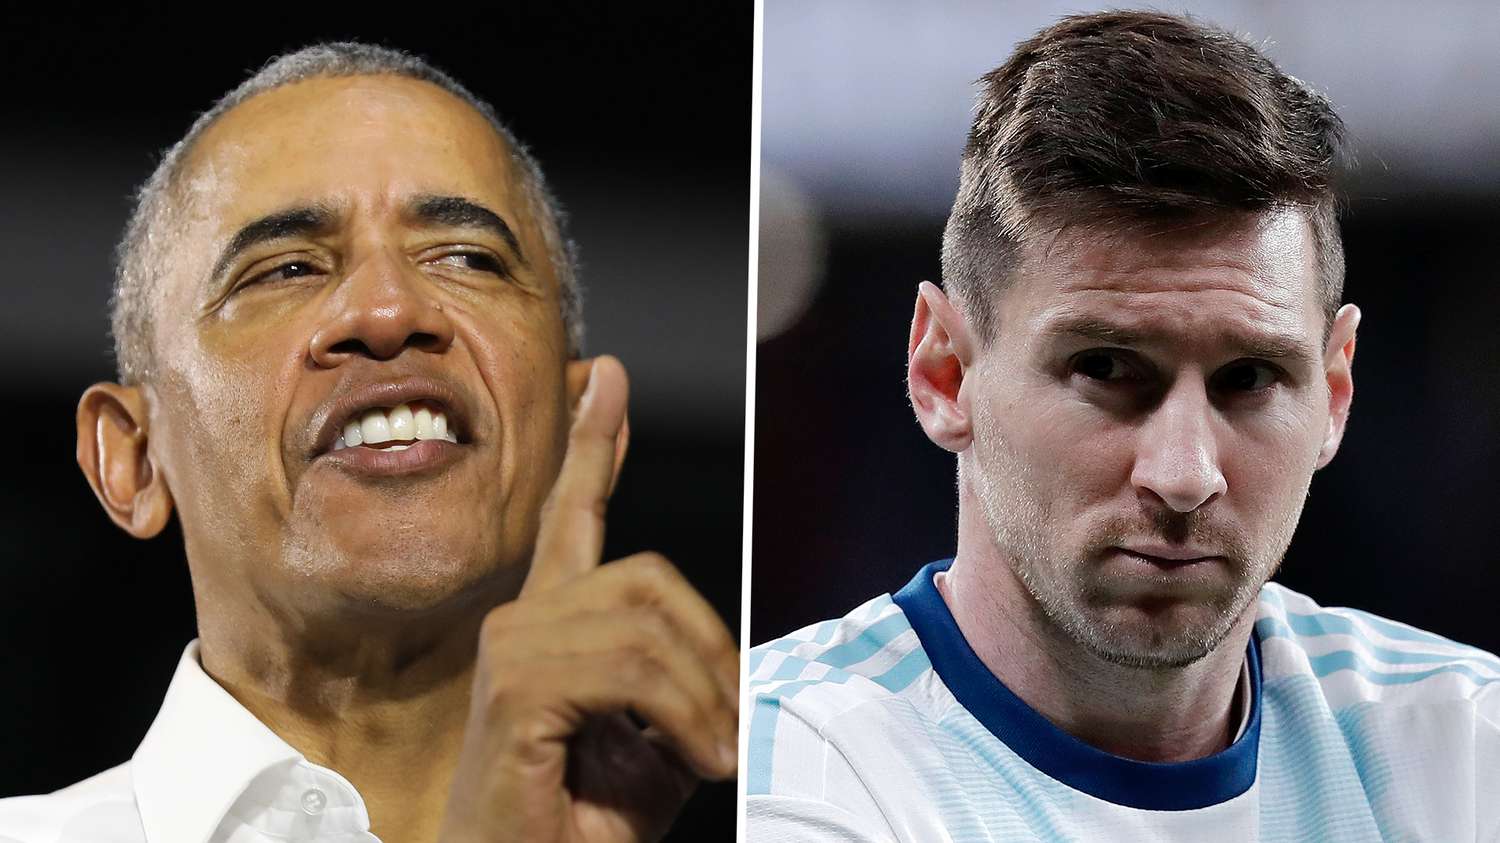 ¿Por qué Argentina no puede ganar un Mundial con Messi?: la explicación de Barack Obama